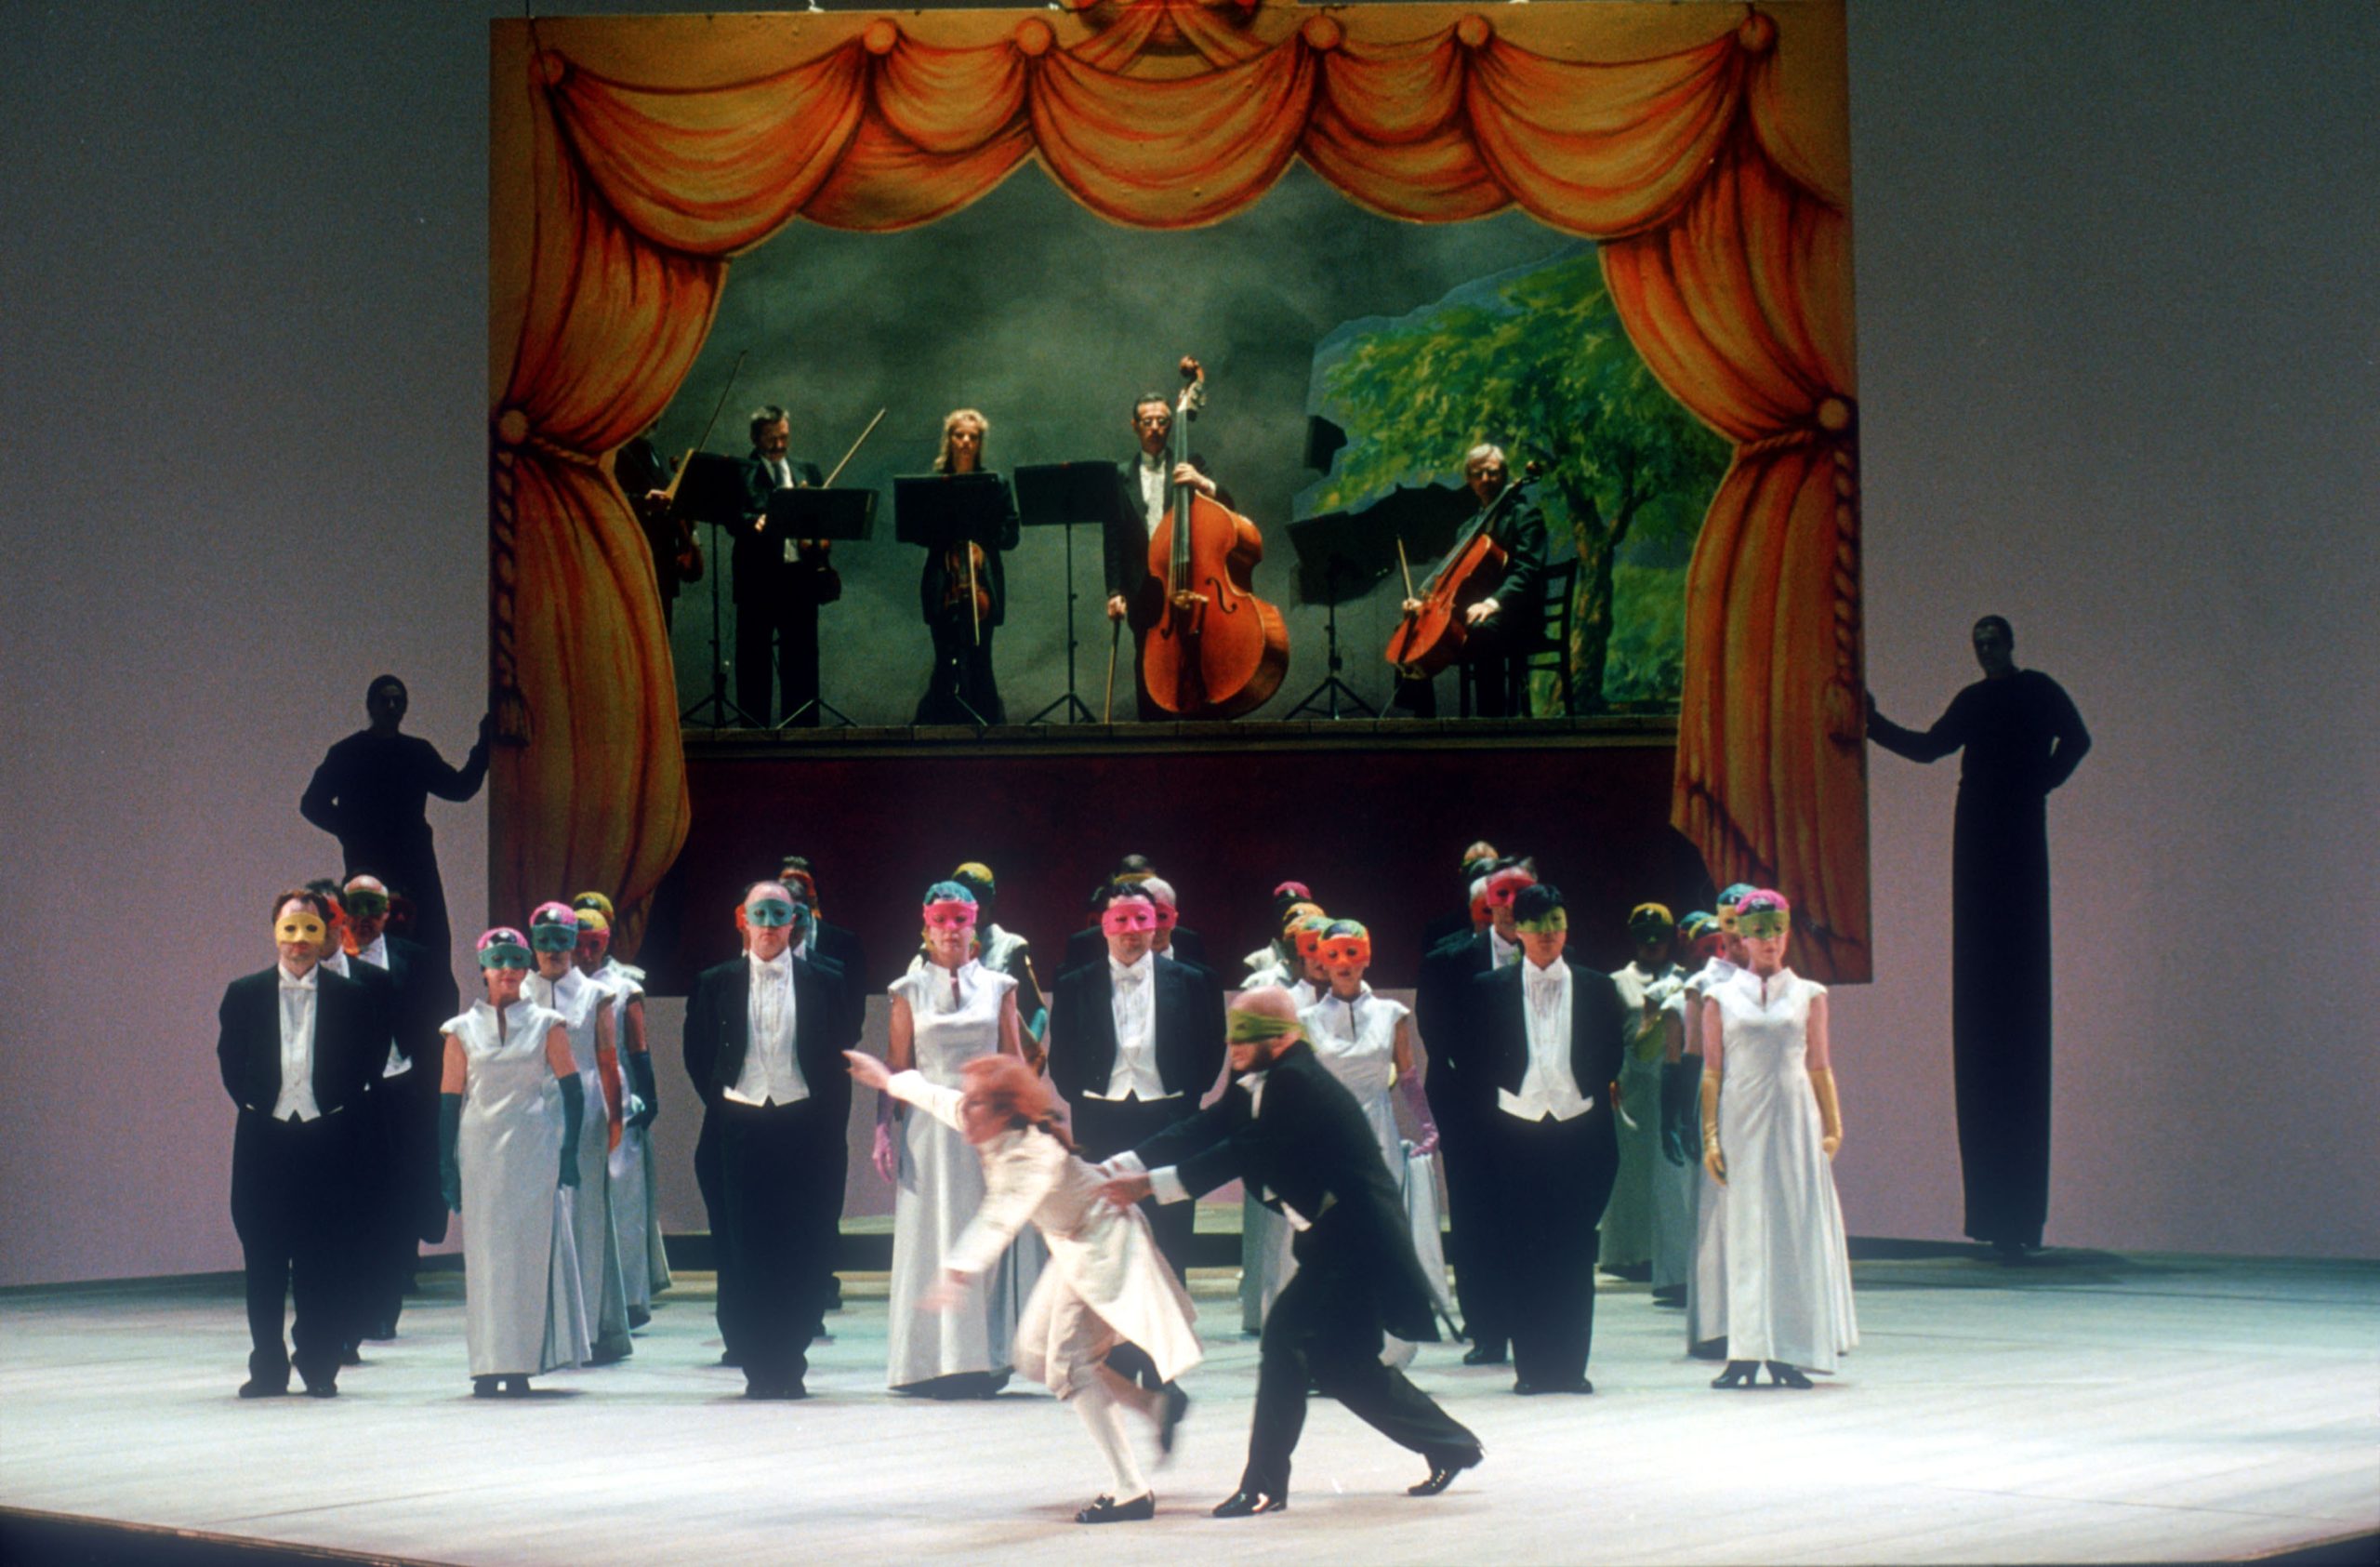 Un ballo in maschera<br />
Giuseppe Verdi<br />
